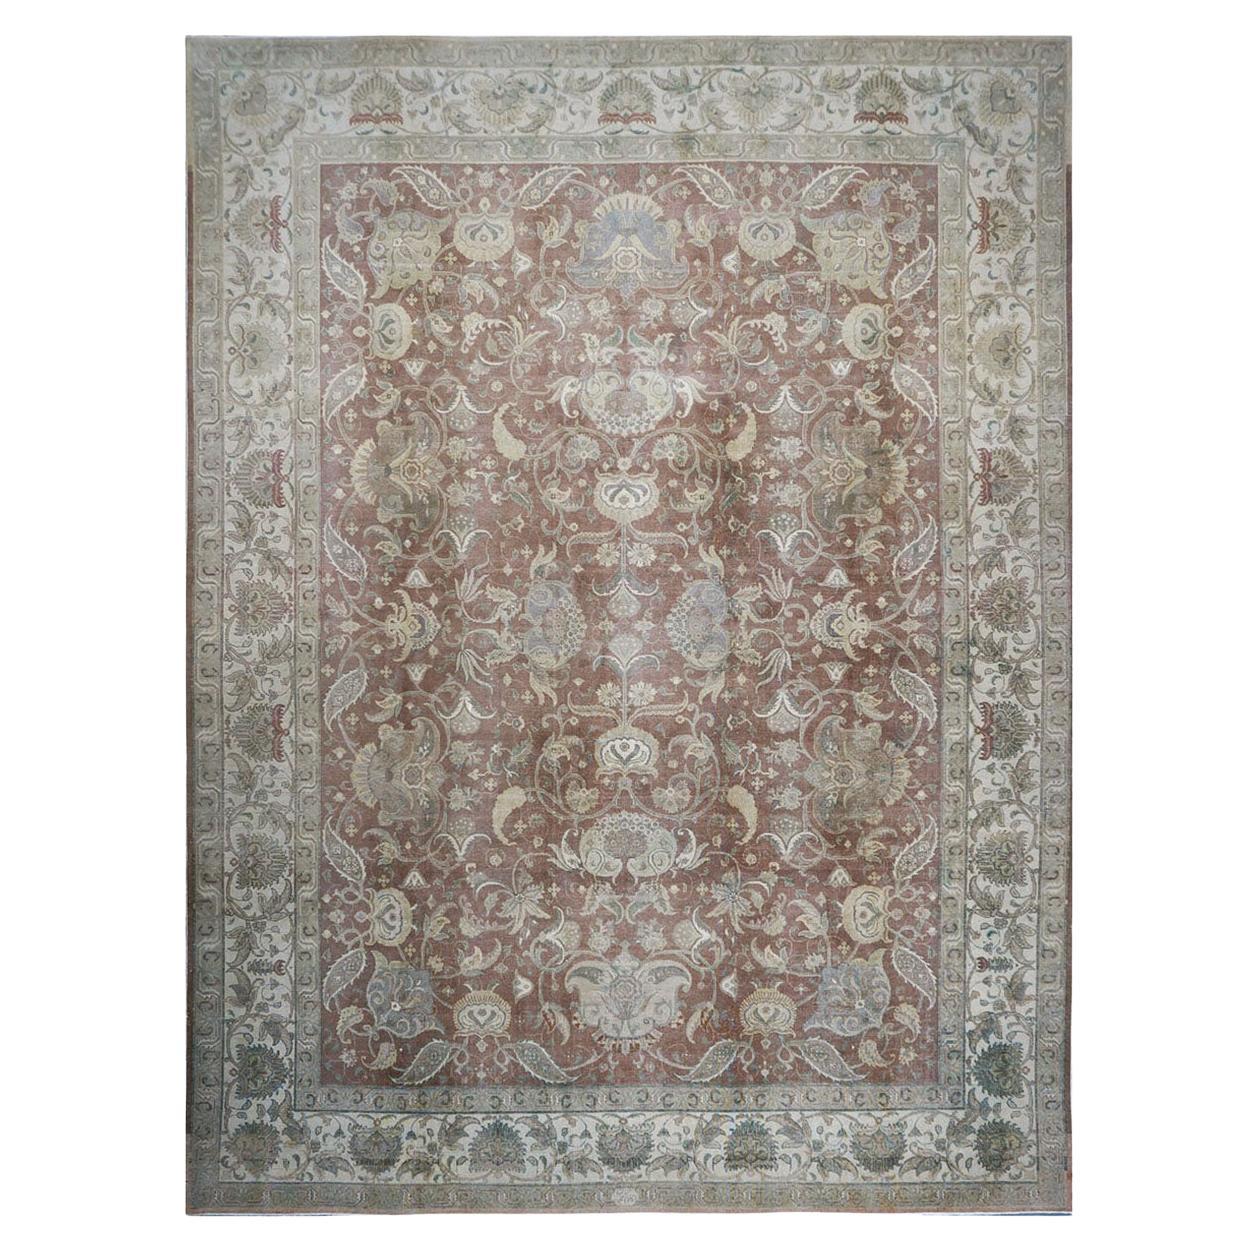 Antiker handgefertigter antiker persischer Tabriz-Teppich in Braun, Grün und Elfenbein, 10x14